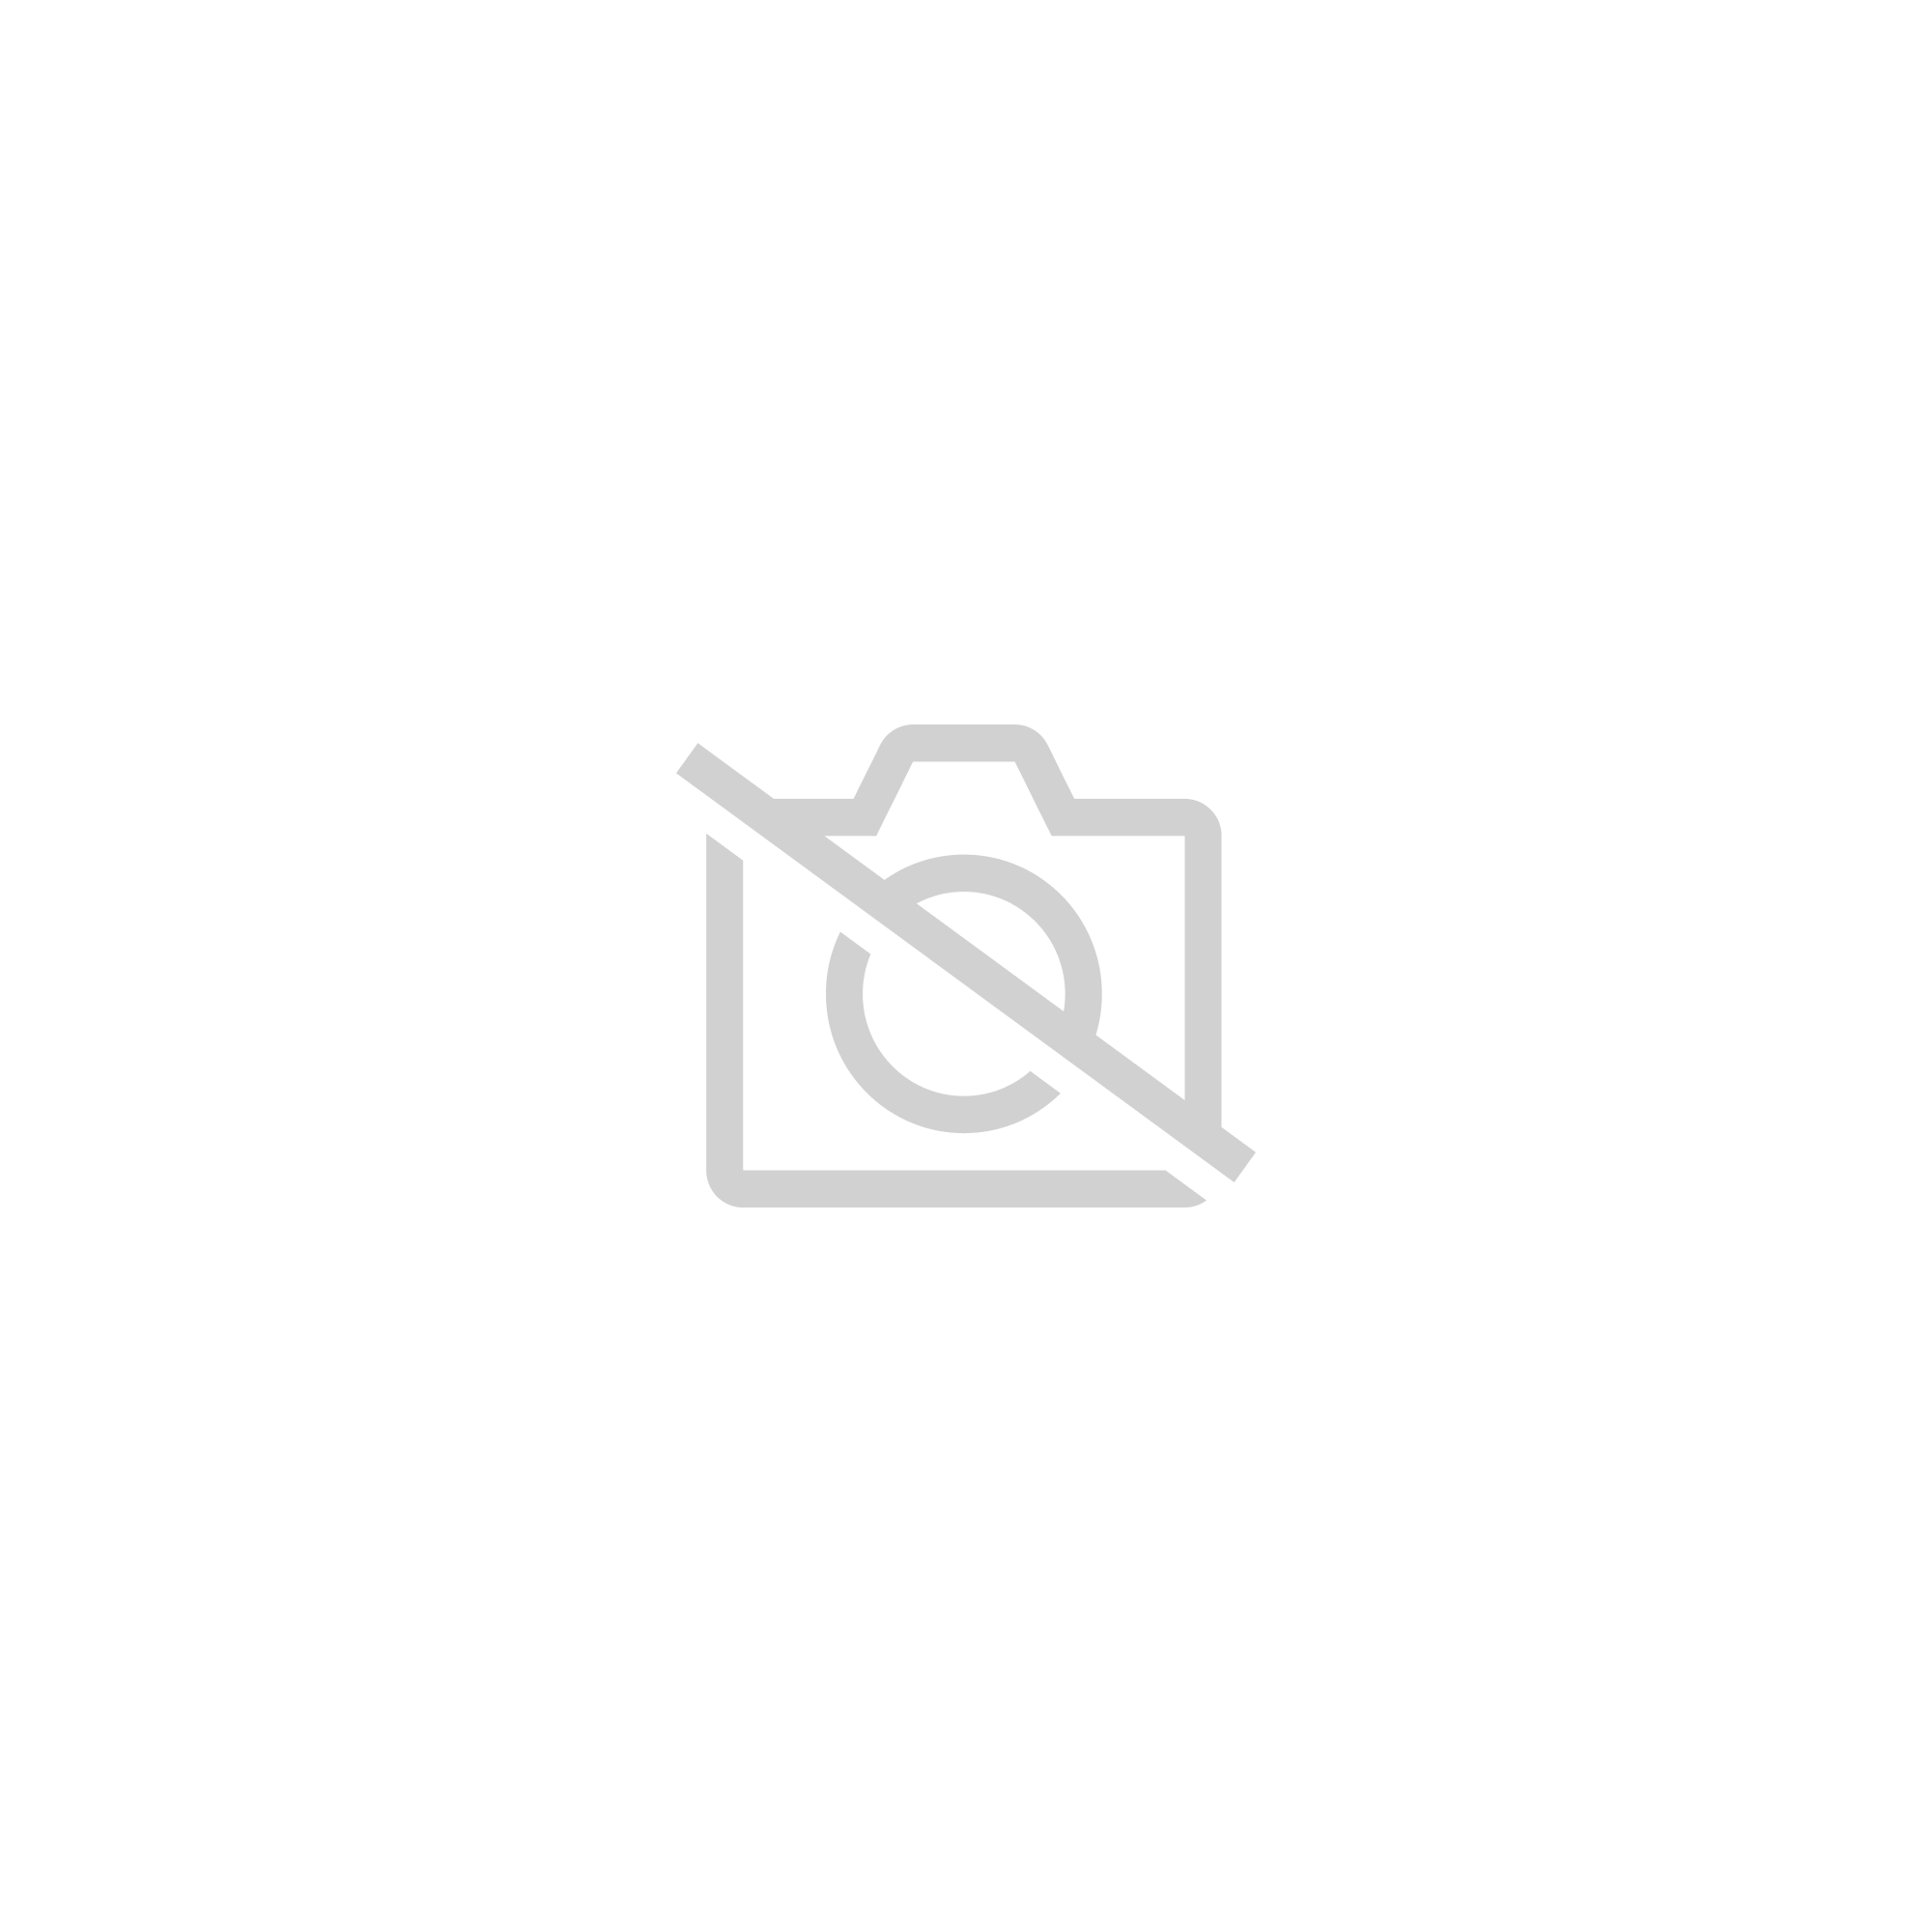 Velvet A M 56 60cm Coree Cosplay Dessin Anime Animaux Fille Lolita Toile Chat Hiver Velours Noir Chat Belle Nekolus Parasol Casquette De Baseball Avec Oreilles De Chat Rakuten